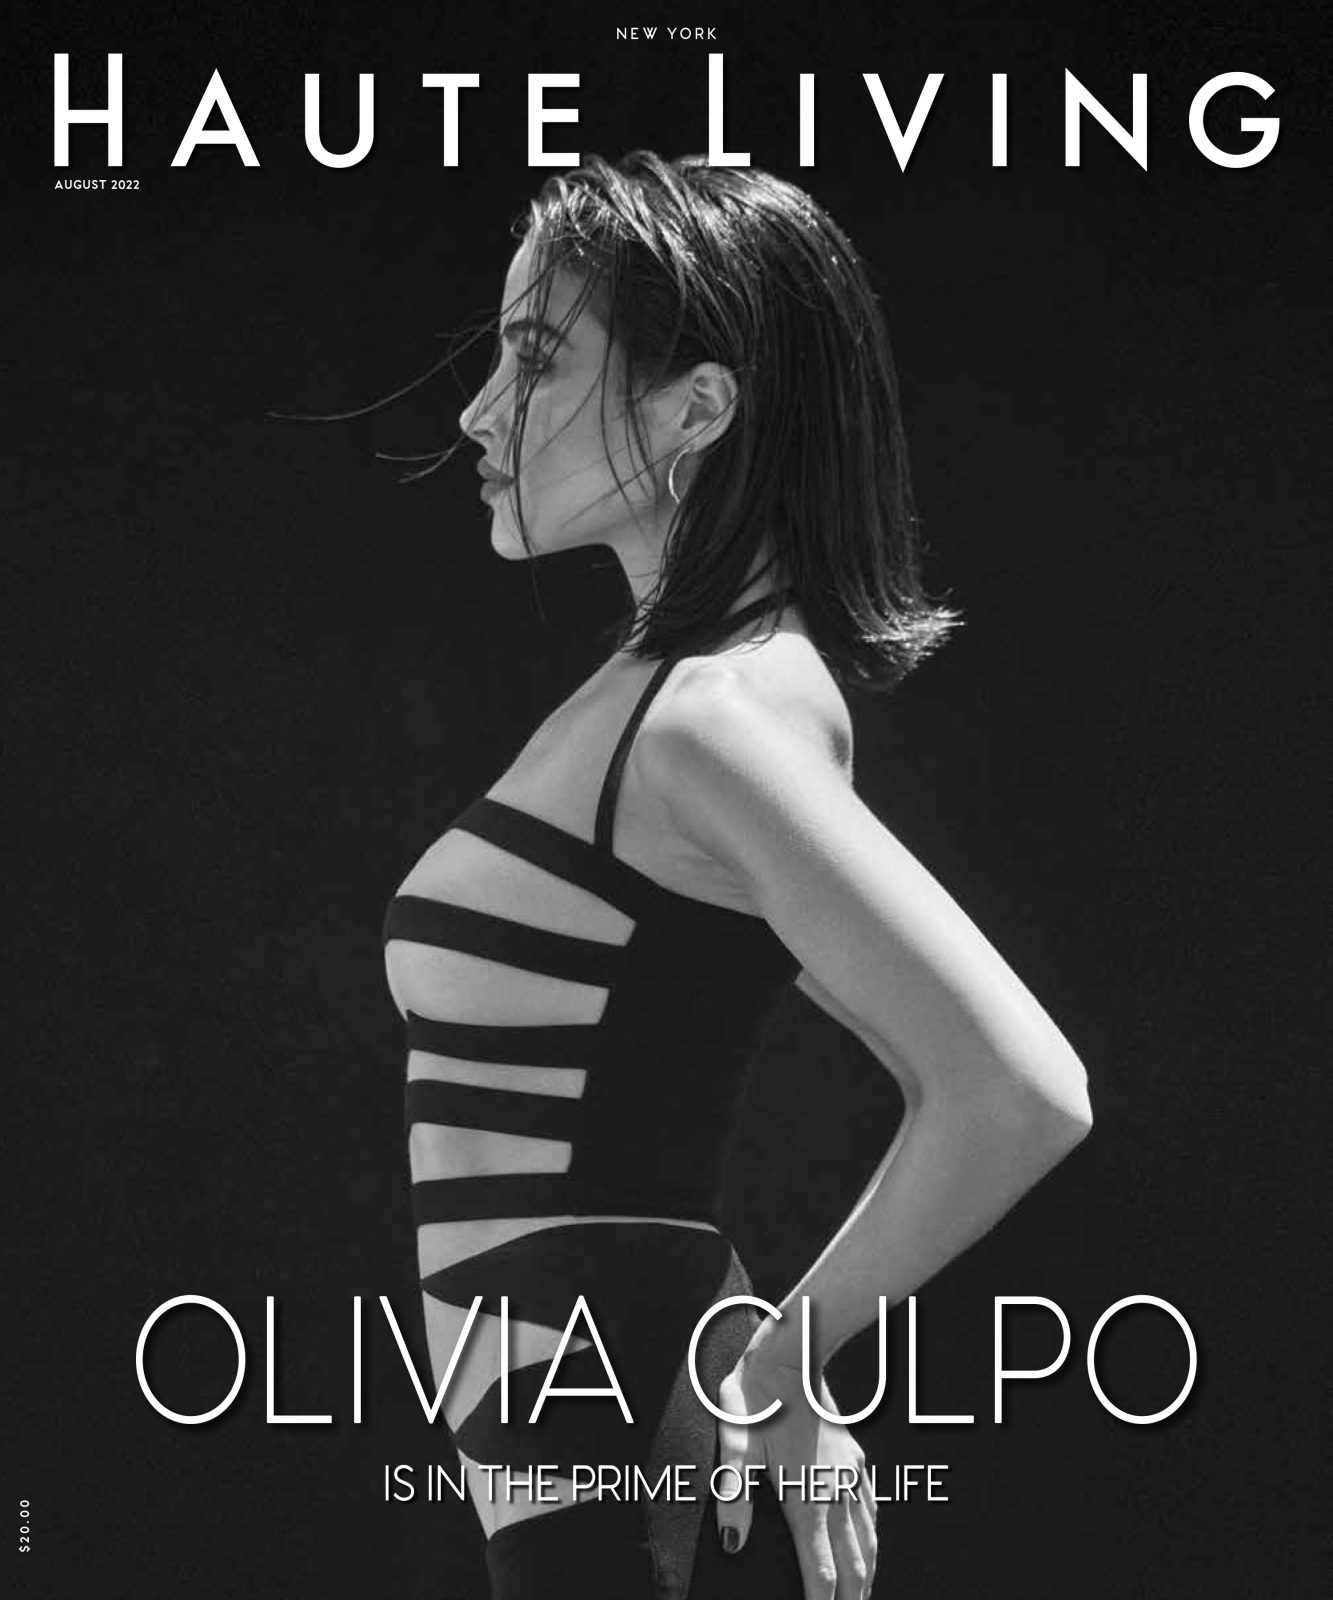 OLIVIA CULPO HAUTE LIVING COVER